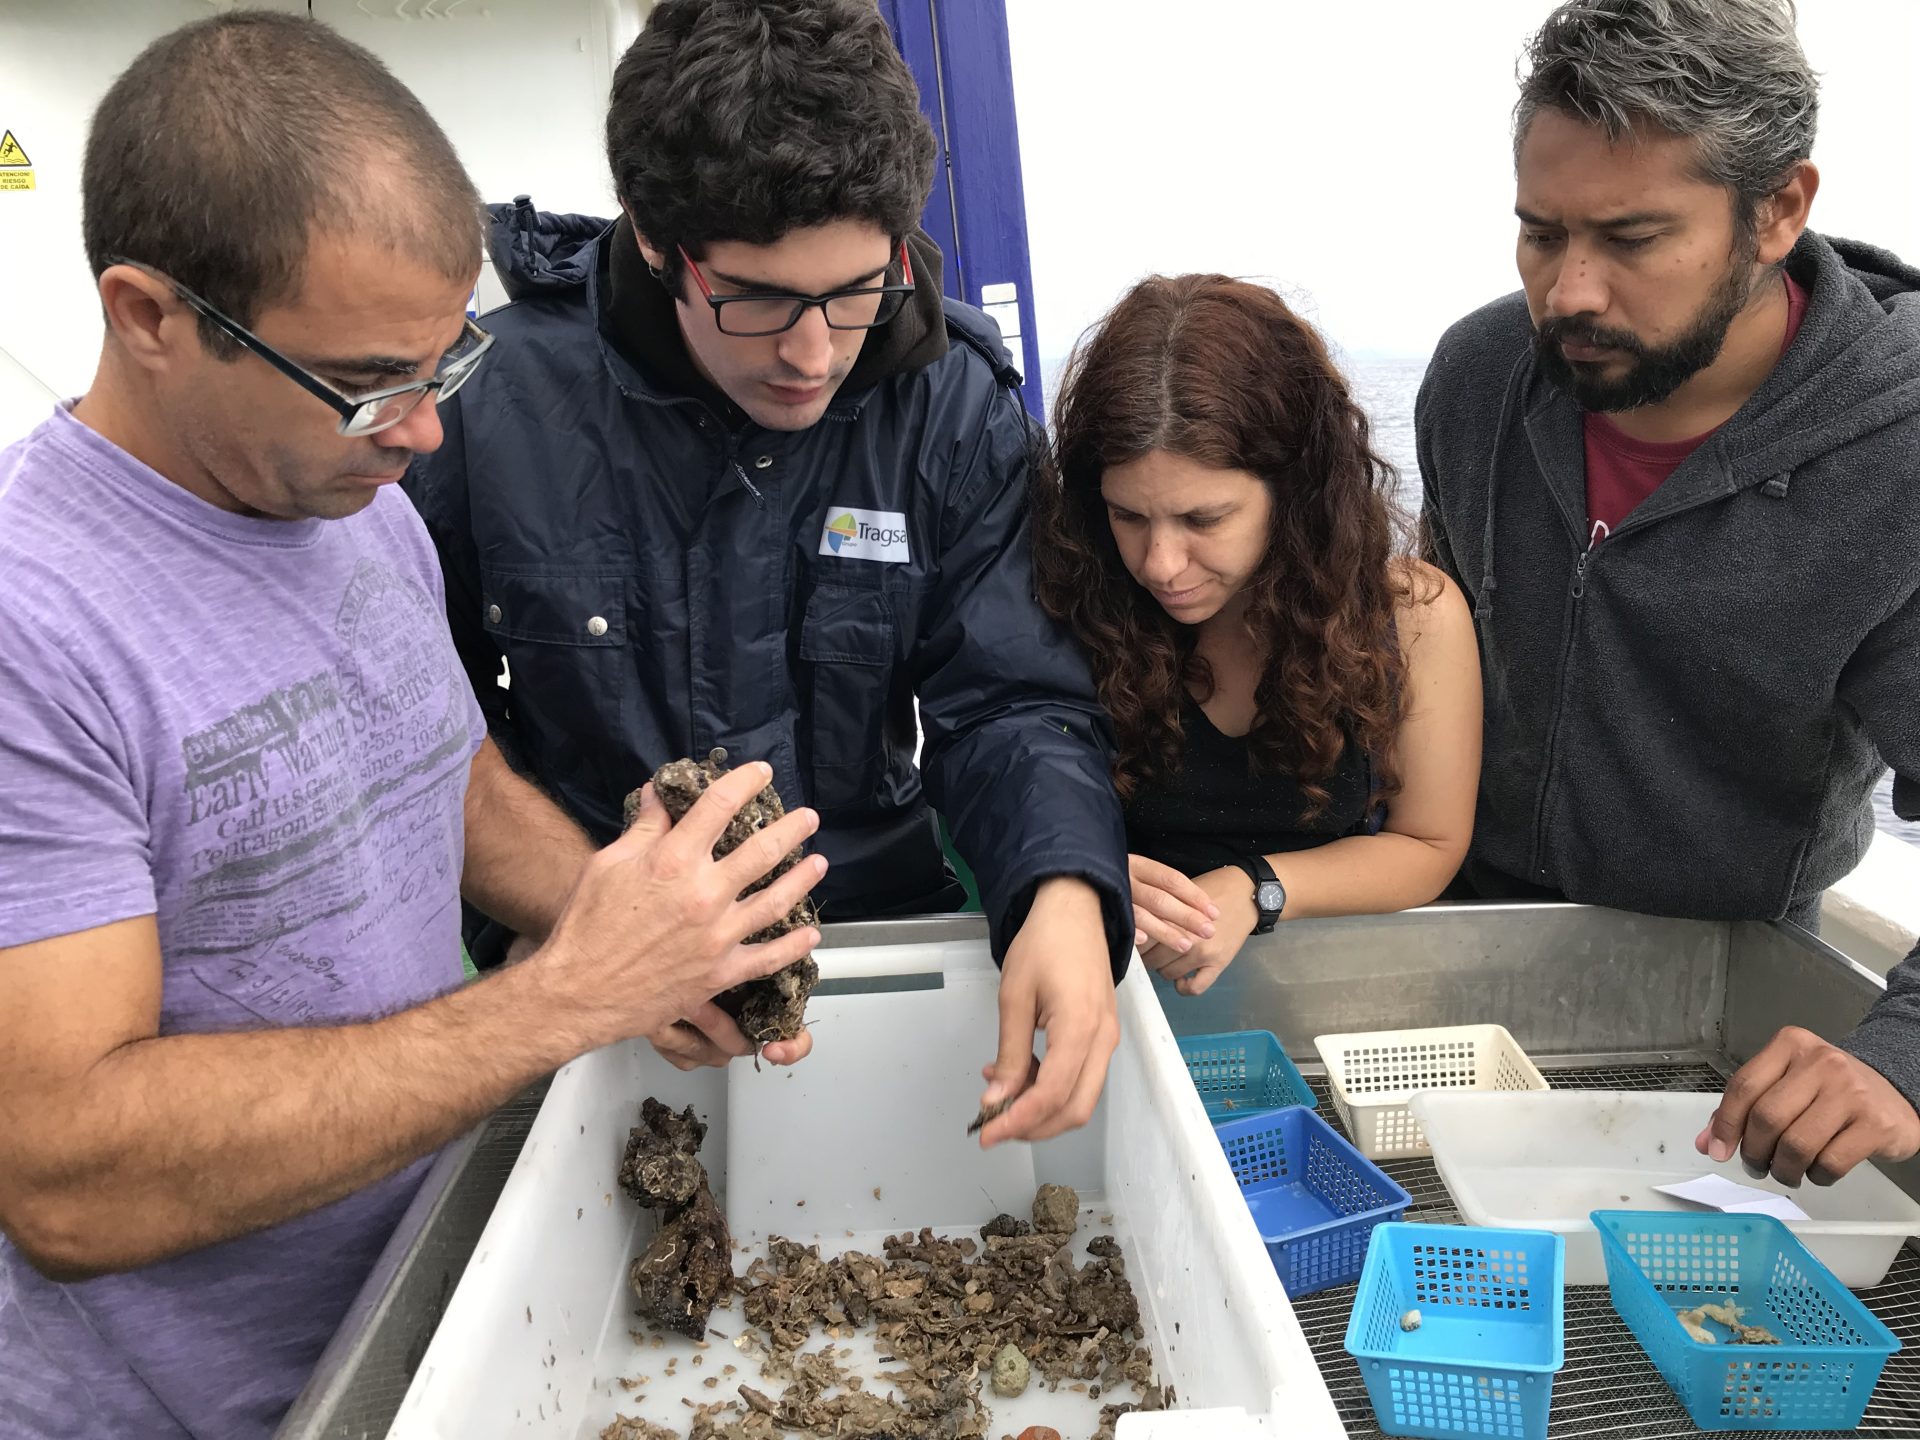 Científicos del Instituto Español de Oceanografía identifican especies de una muestra, durante la campaña científica en los montes submarinos del Canal de Mallorca coordinada por la Fundación Biodiversidad del Ministerio para la Transición Ecológica. EFE/Susana López Lamata